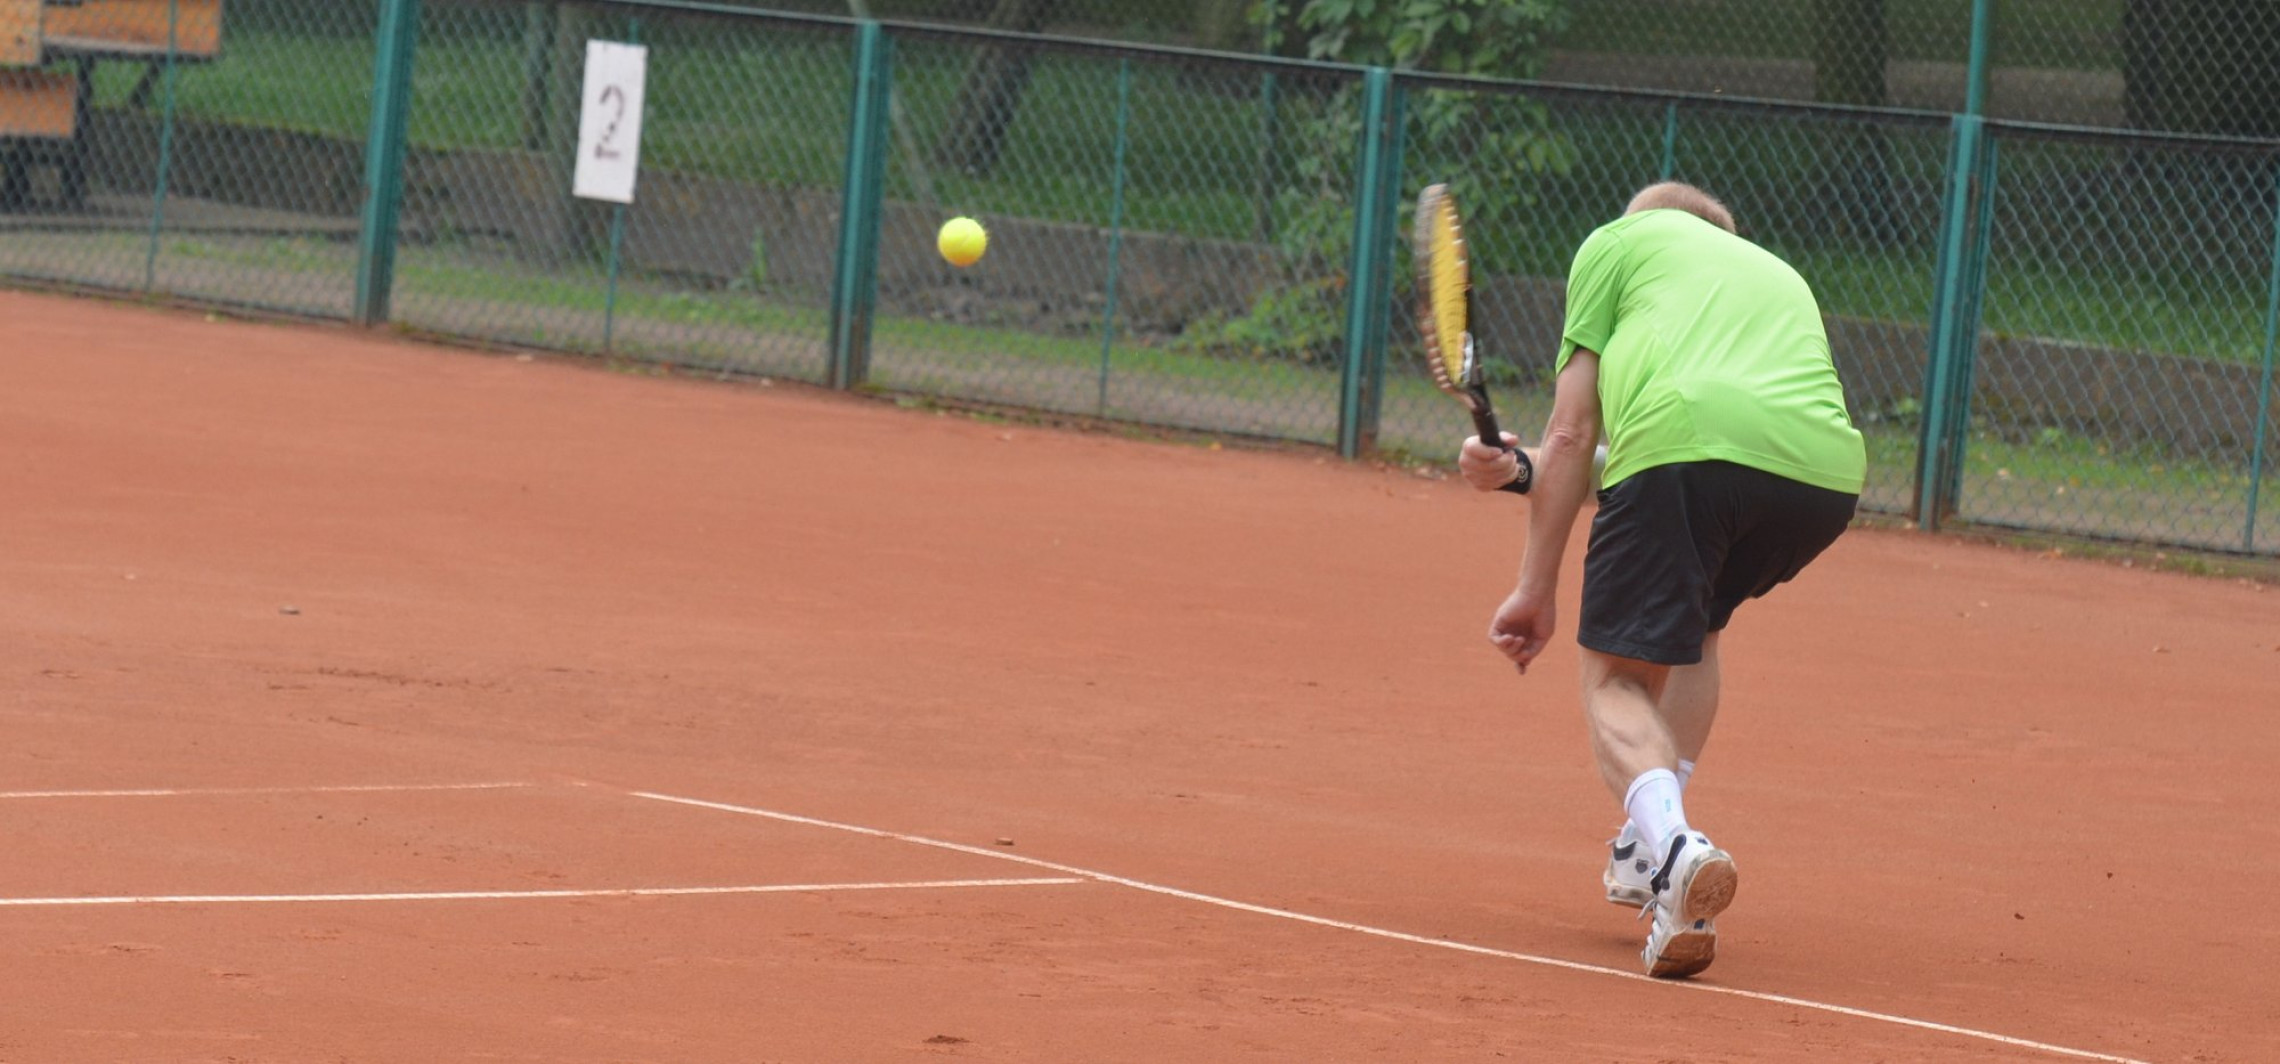 Inowrocław - W weekend tenisowy turniej. Zapisy trwają